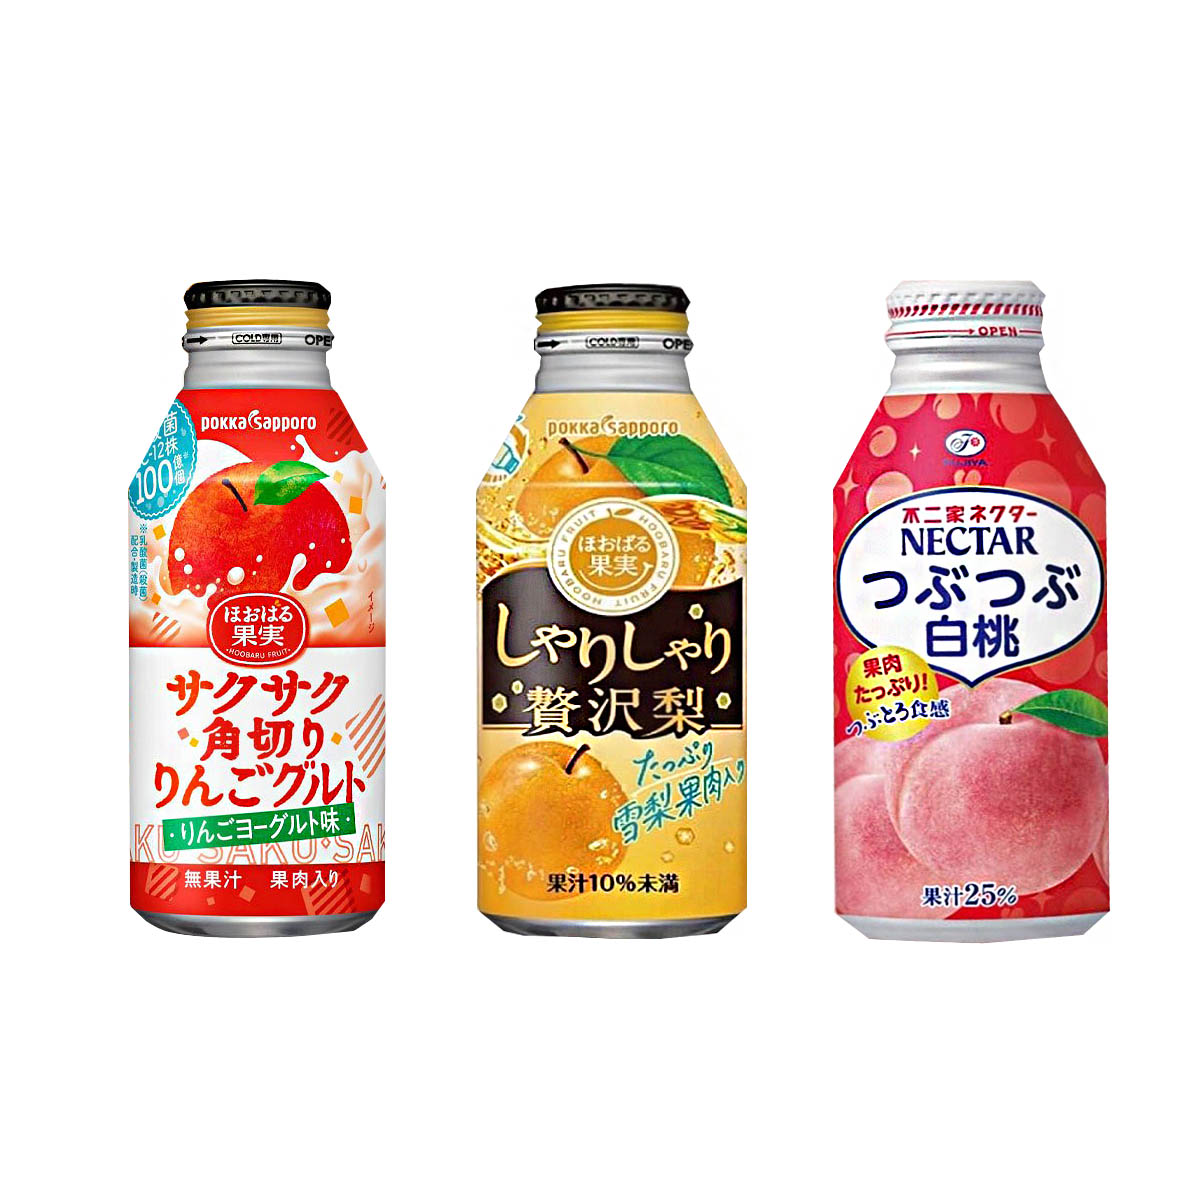 日本果肉果汁 蘋果優格 梨子 白桃 418ml 440ml 380ml-POKKA SAPPORO 不二家 FUJIYA 日本進口製造